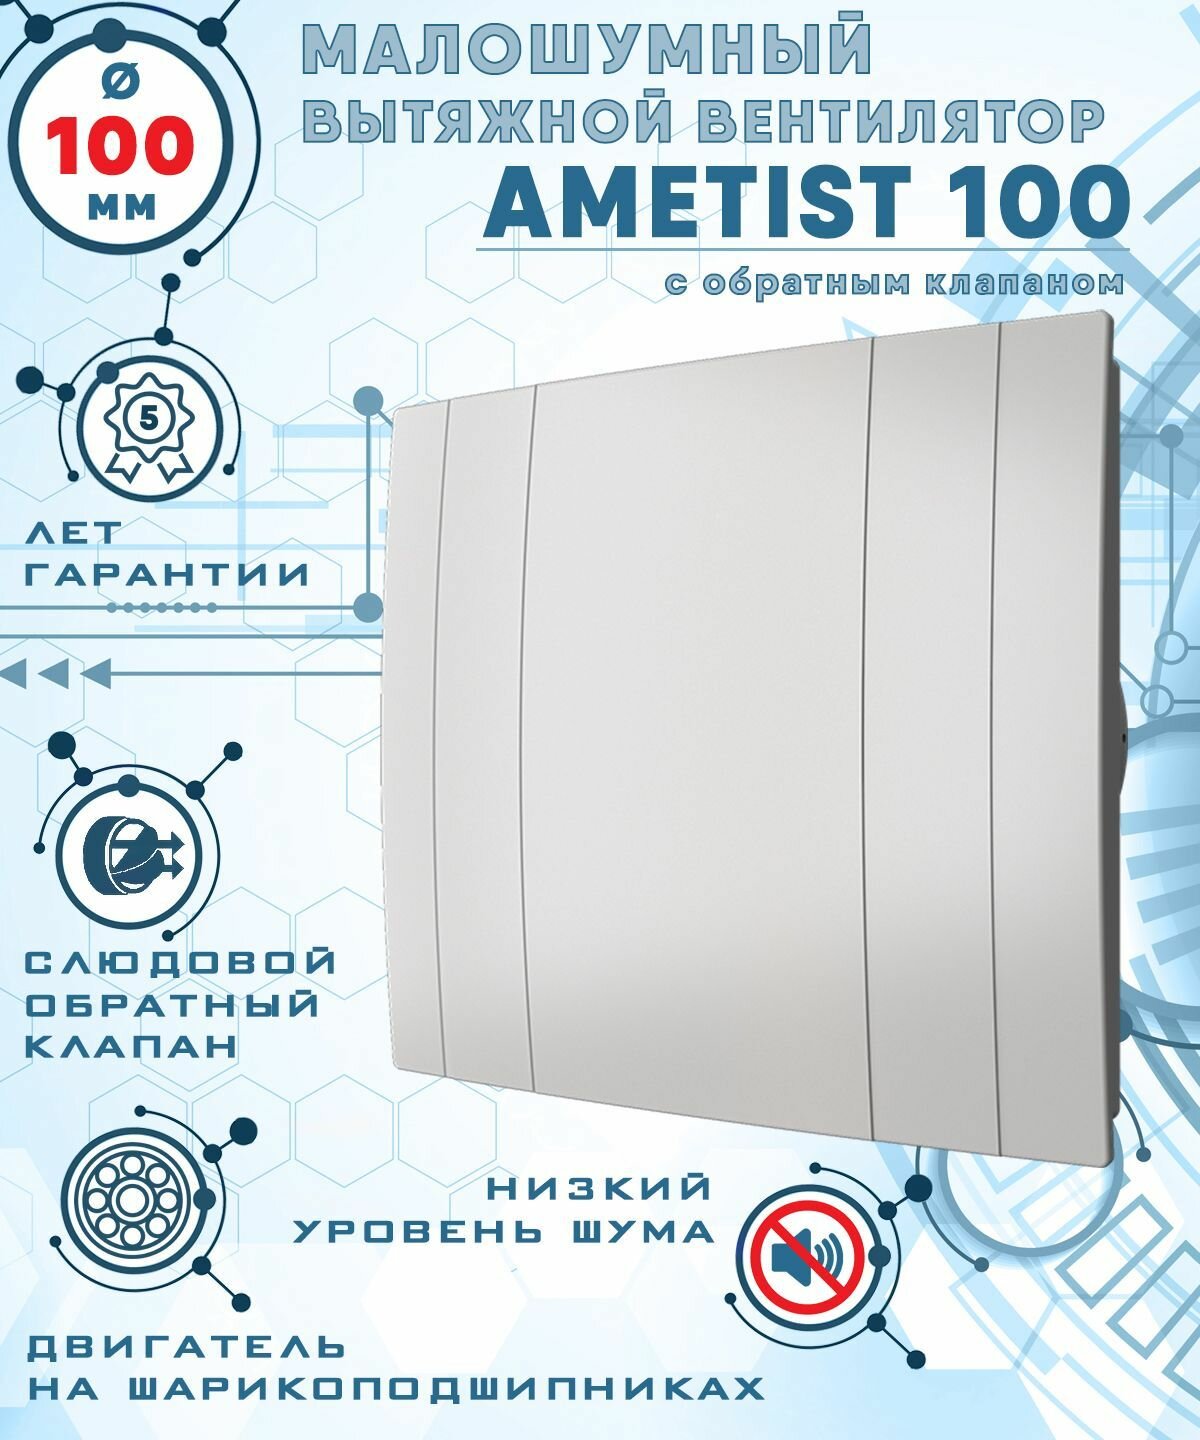 AMETIST 100 вентилятор вытяжной малошумный 25 Дб энергоэффективный 8 Вт на шарикоподшипниках с обратным клапаном диаметр 100 мм ZERNBERG